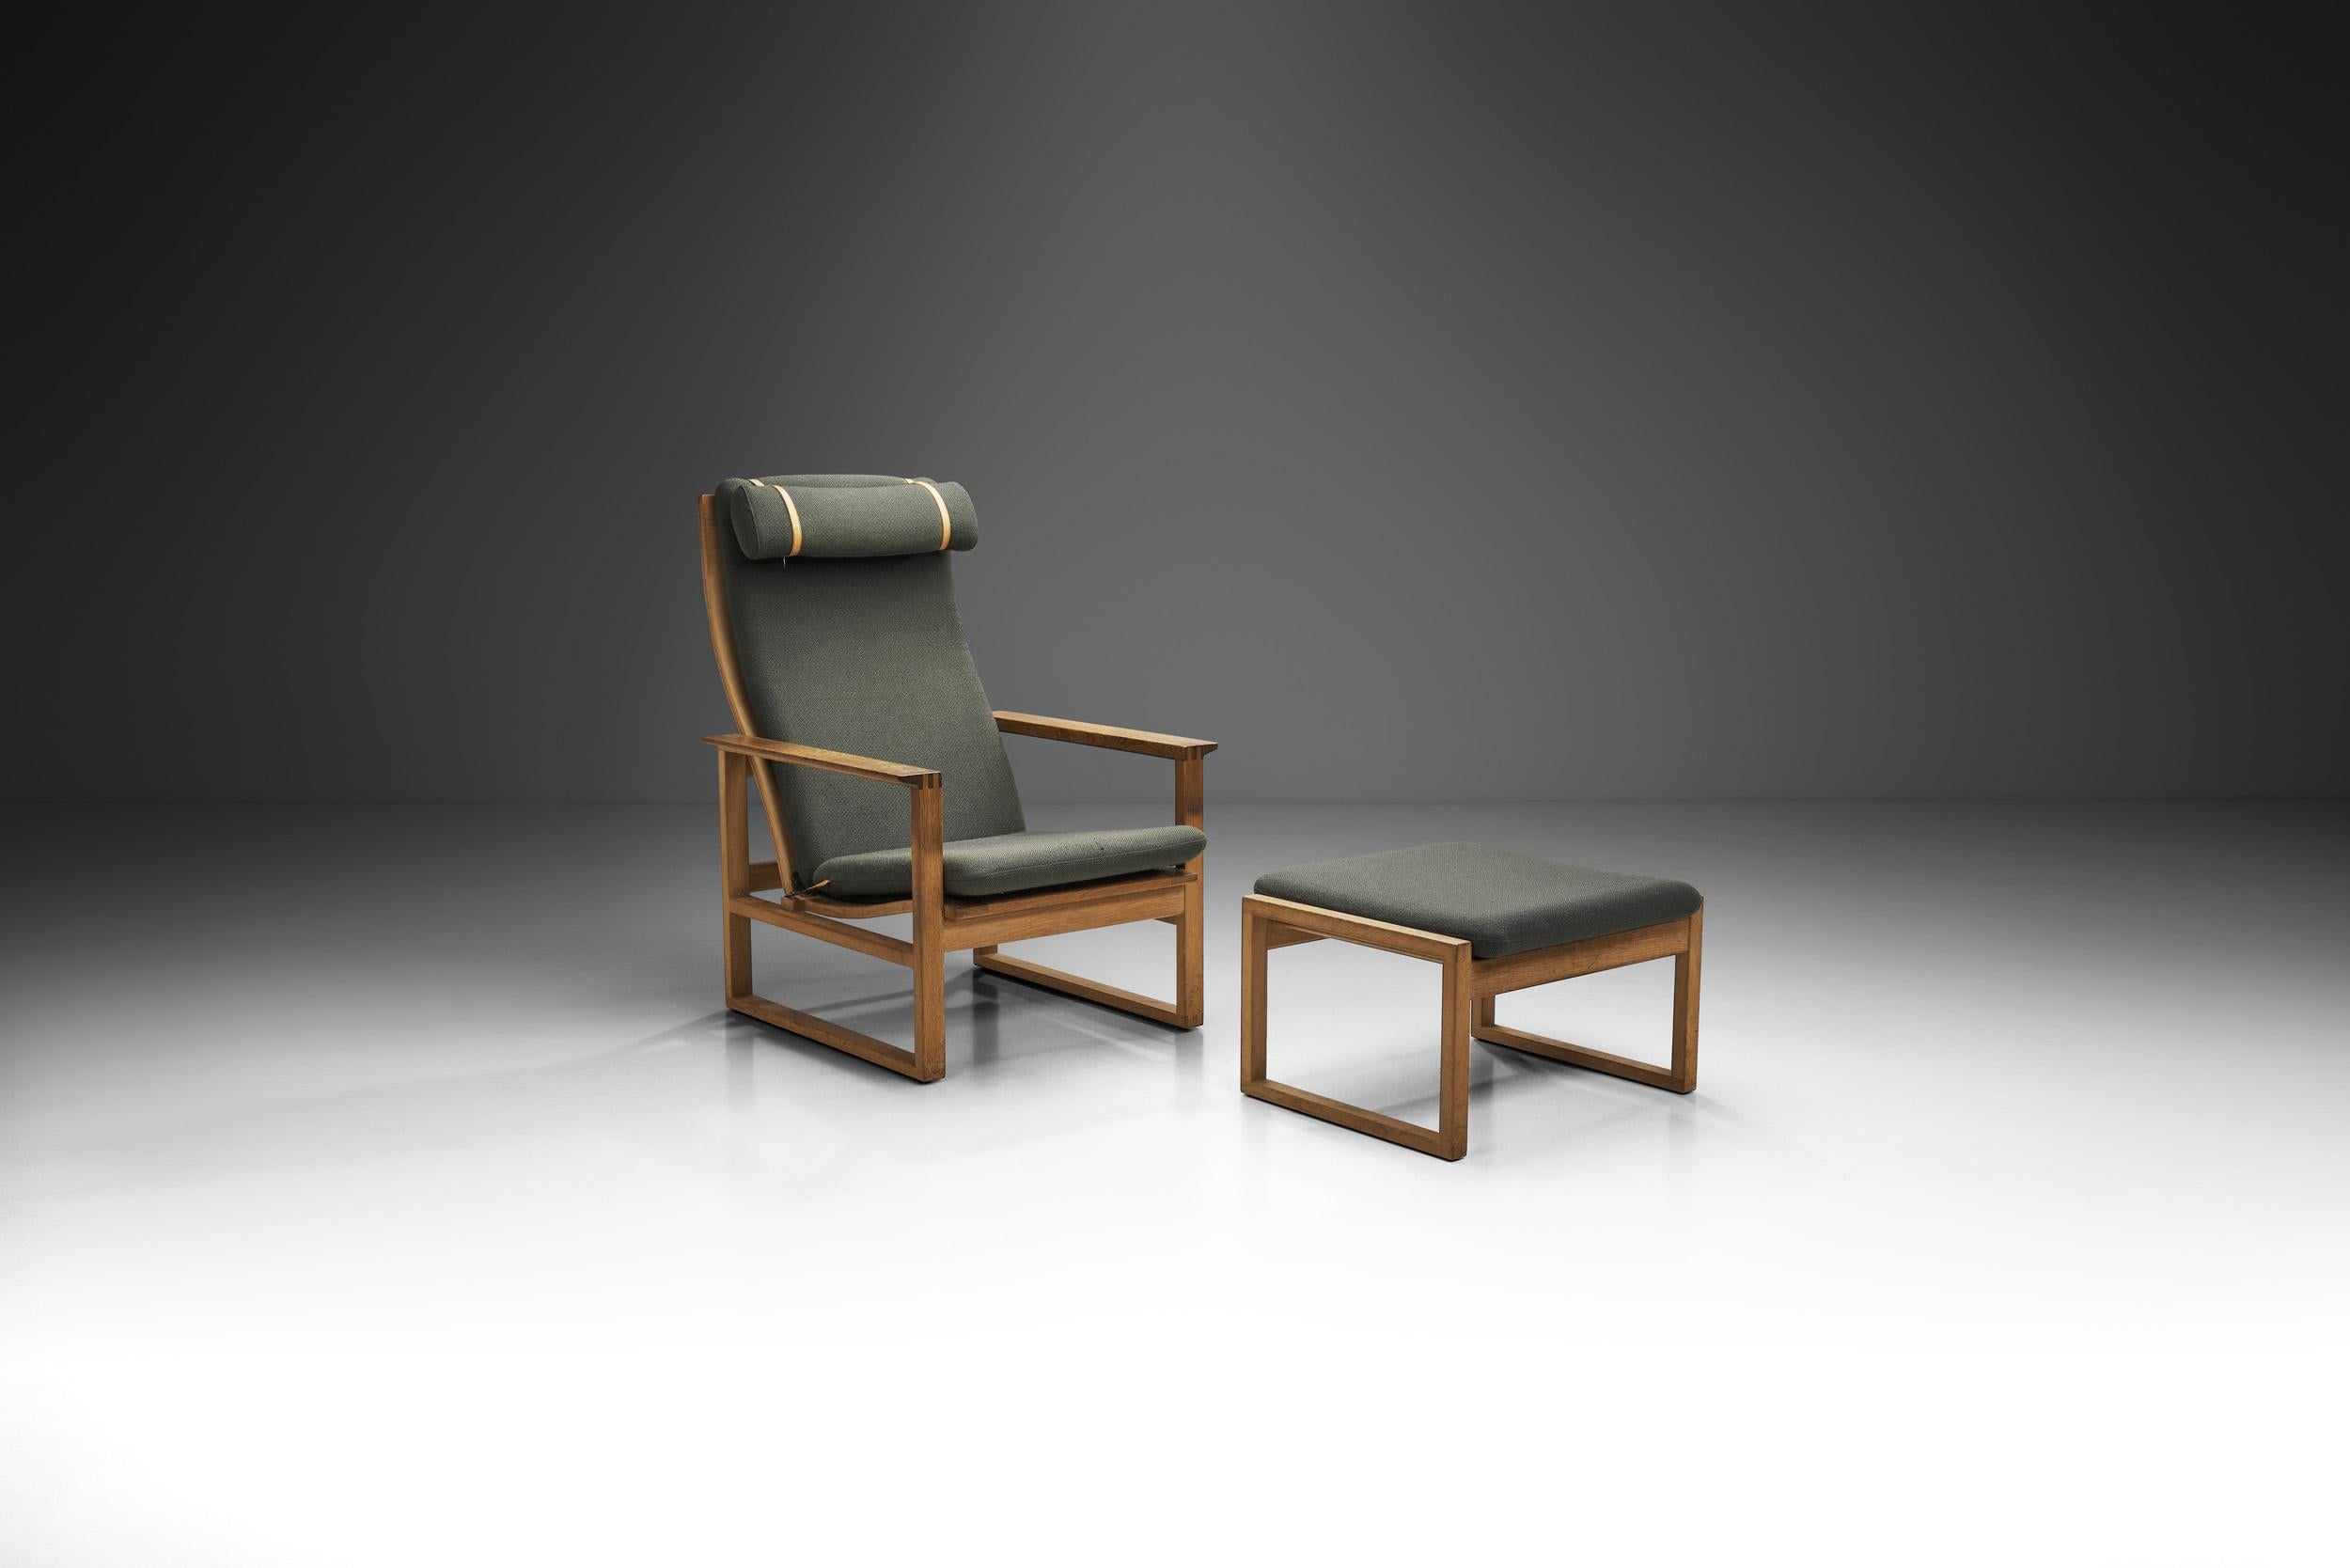 Die Entwürfe von Borge Mogensen zielen auf Funktionalität, minimalistisches Aussehen und leichte Zugänglichkeit ab. Dieser Loungesessel ist vielleicht eines der besten Beispiele für diese Prinzipien des dänischen Meisters. Die beiden Modelle 